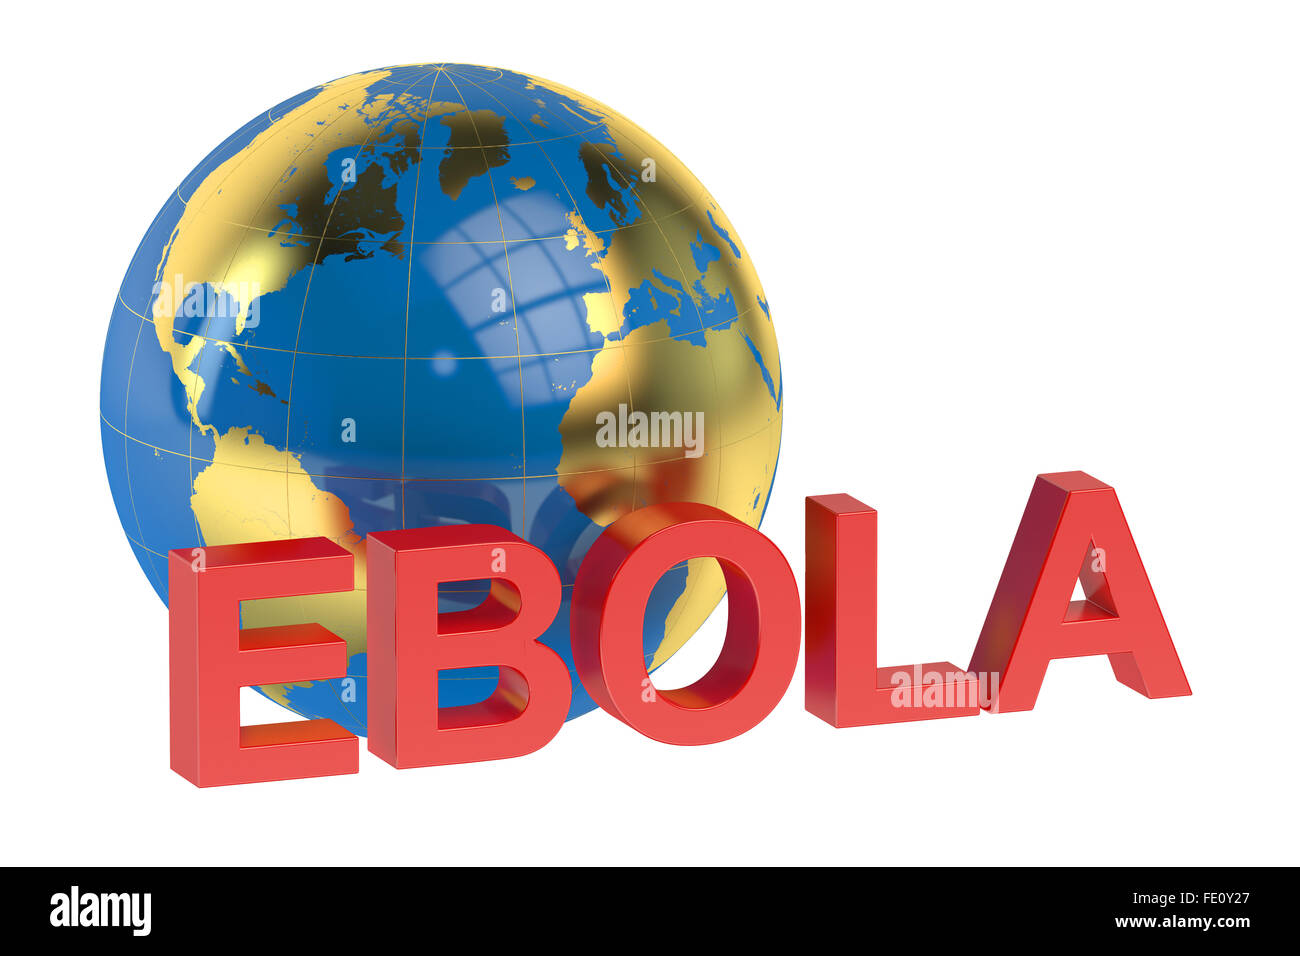 Ebola concept isolated on white background Stock Photo